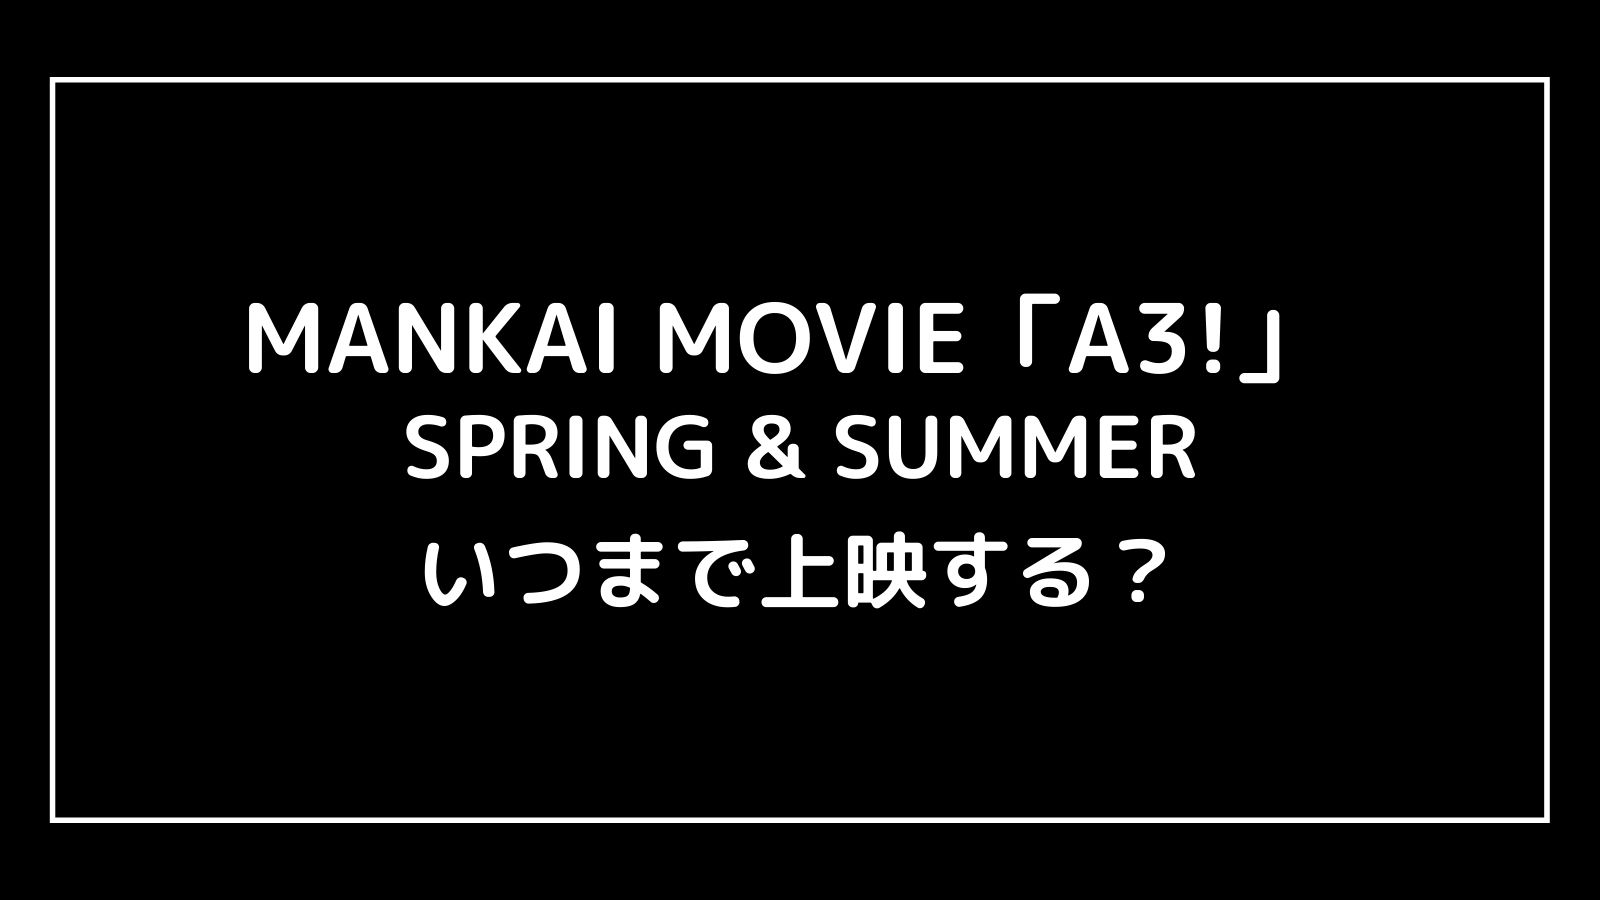 MANKAI MOVIE「A3!」エームビはいつまで上映するのか元映画館社員が予想！【SPRING & SUMMER／AUTUMN & WINTER】